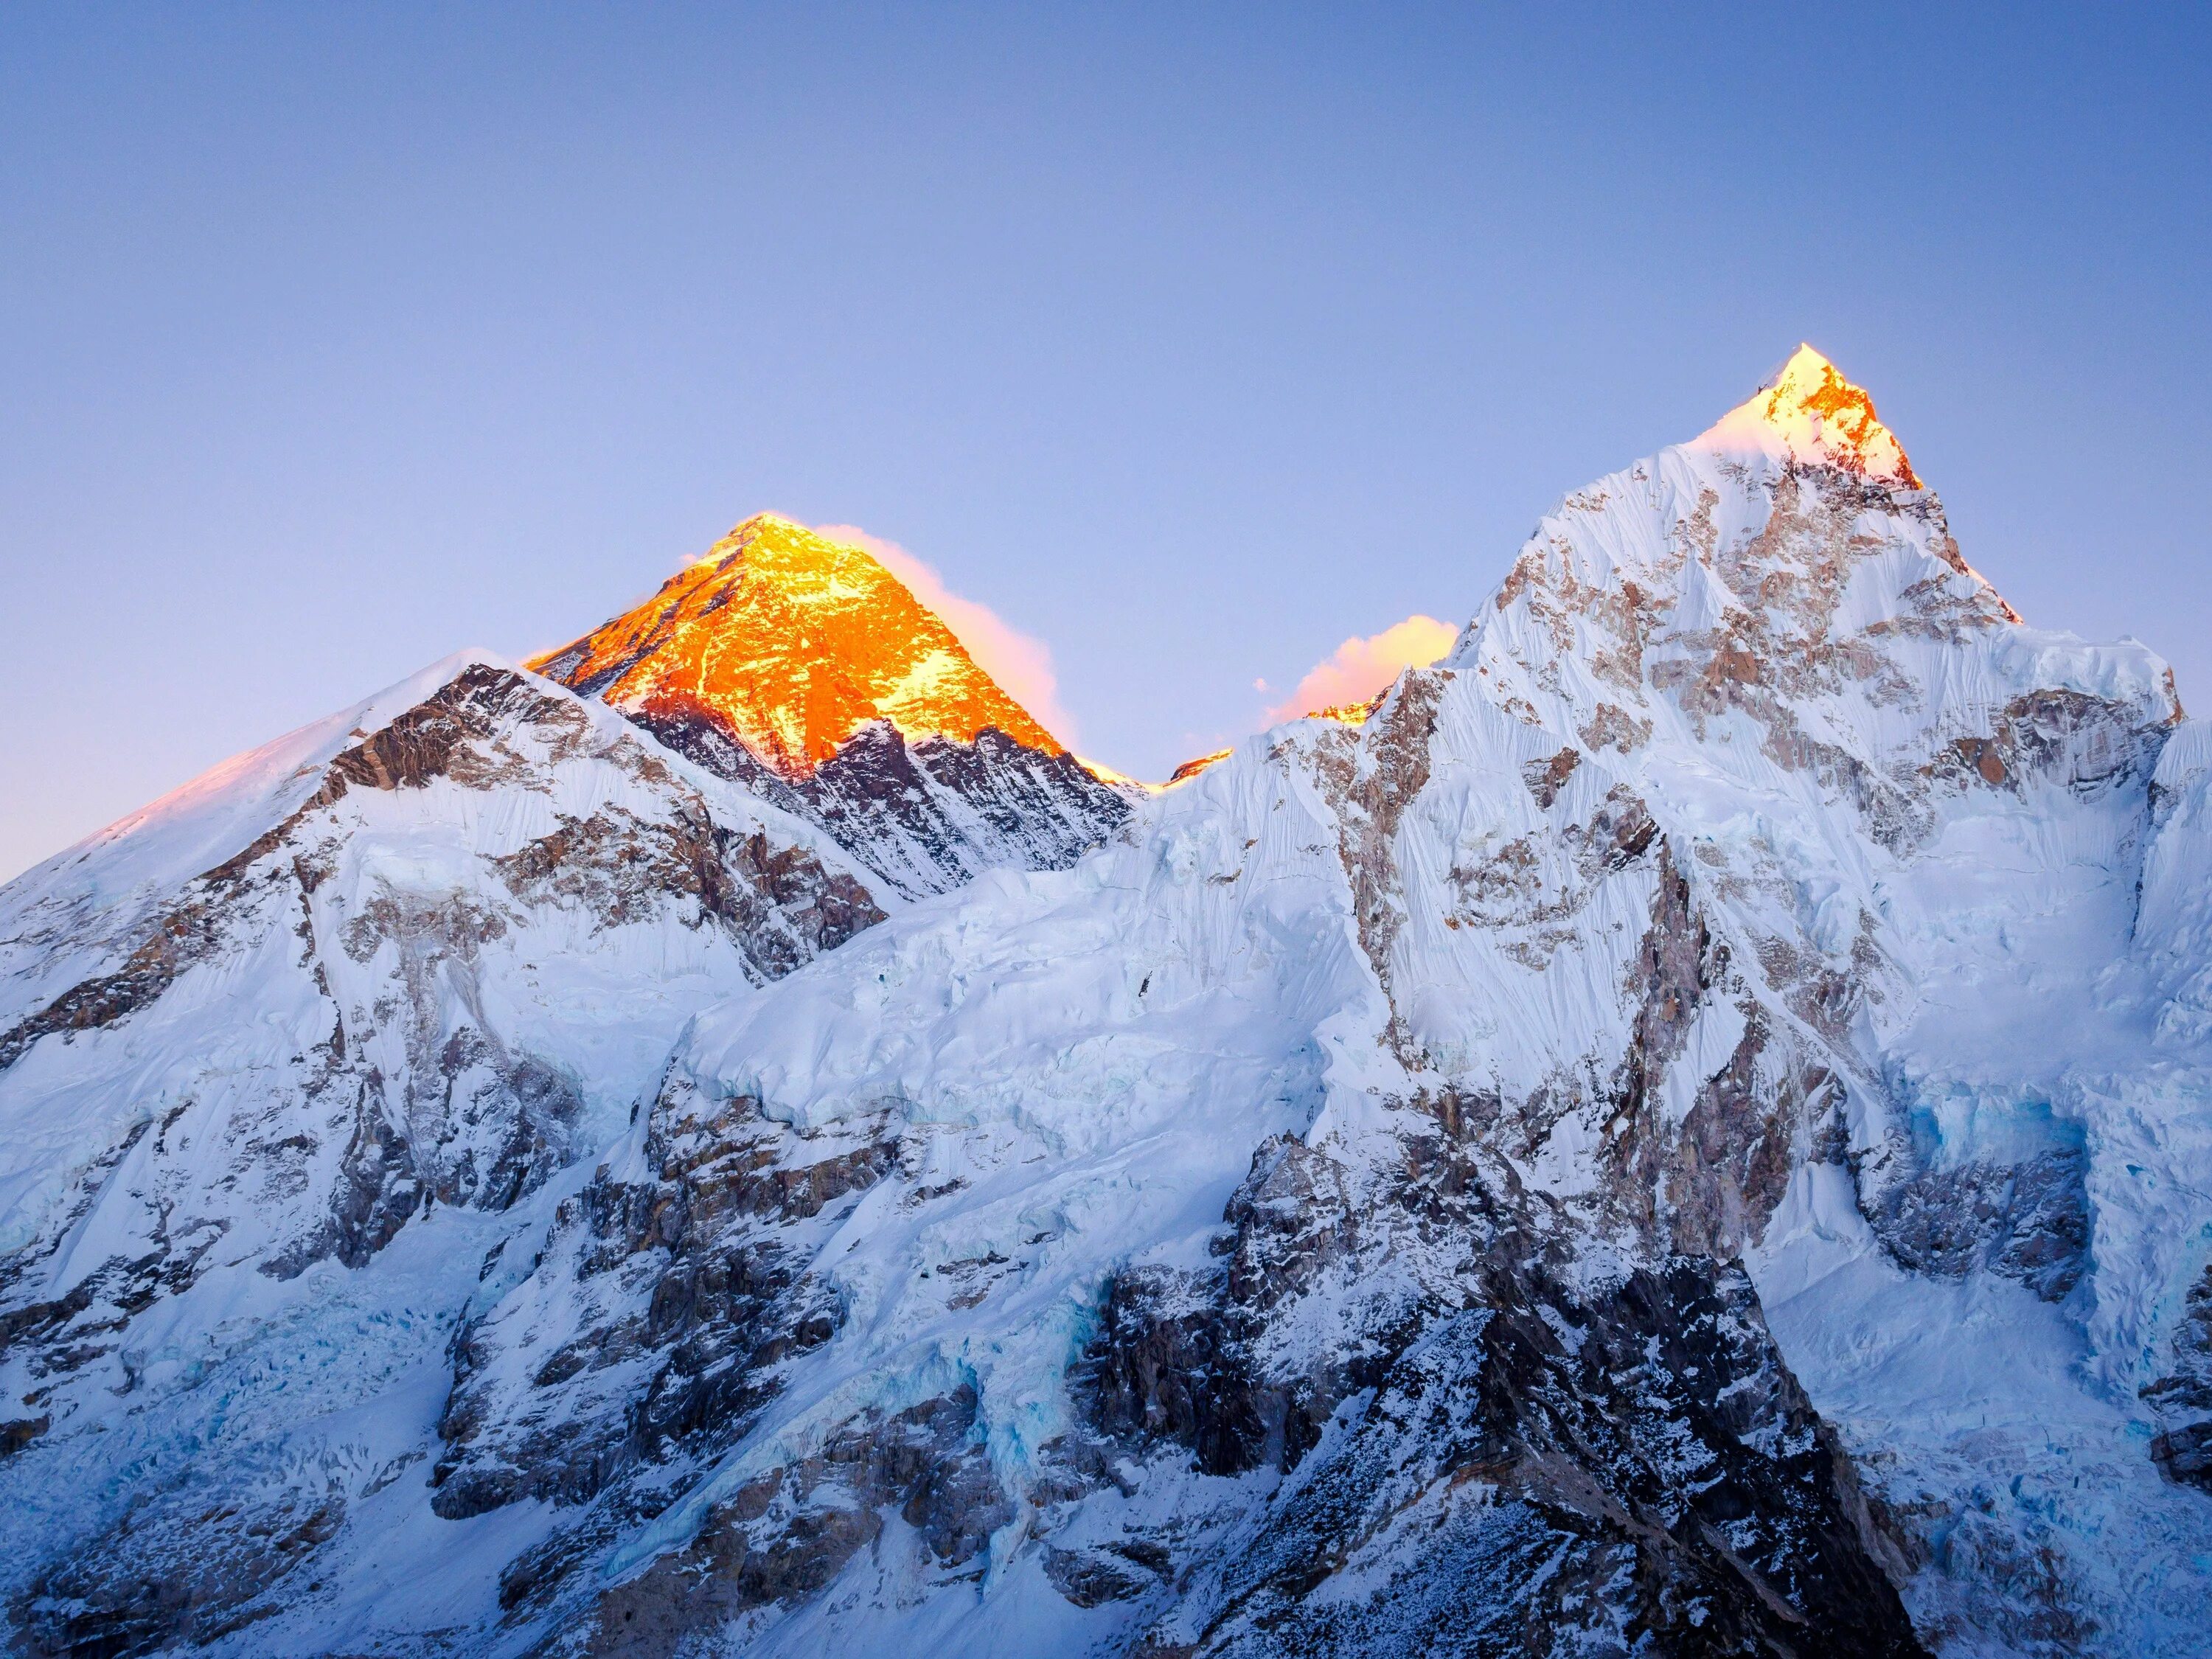 Гималаи Эверест Джомолунгма. Гора Эверест (Джомолунгма). Гималаи. «Сагарматха» = Эверест = Джомолунгма). Непал Гималаи Эверест. Білім шыңы